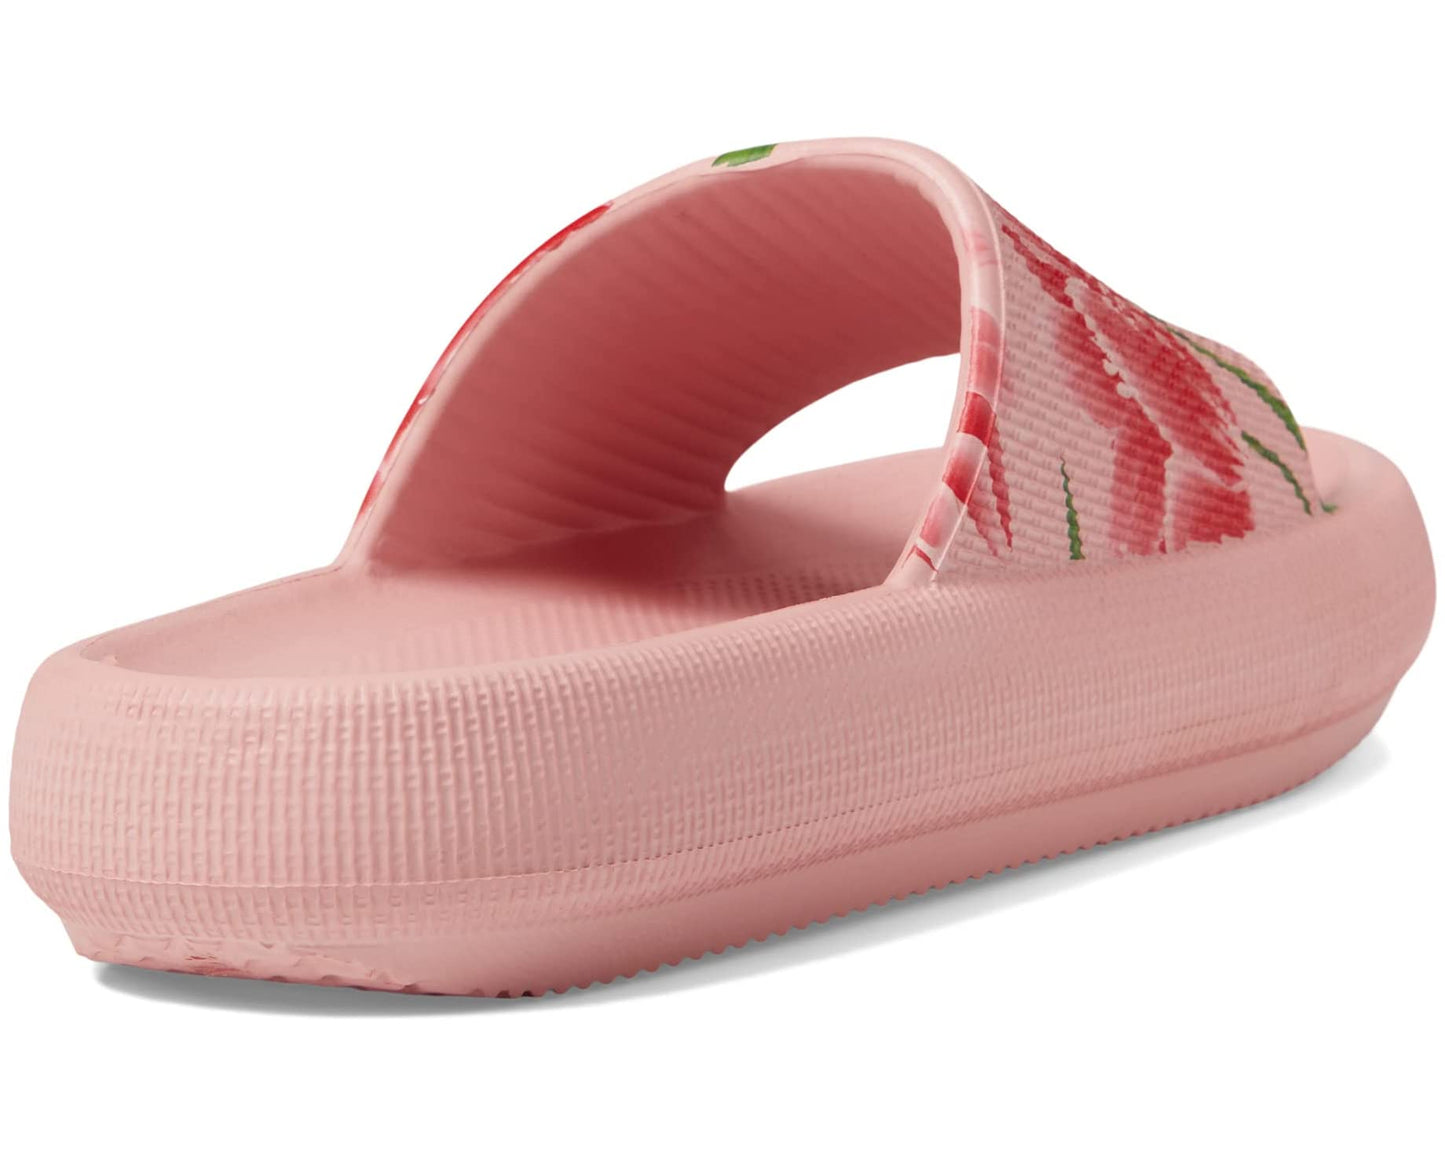 Little Lexa Pink Slides with Floral  - Doodlebug's Children's Boutique